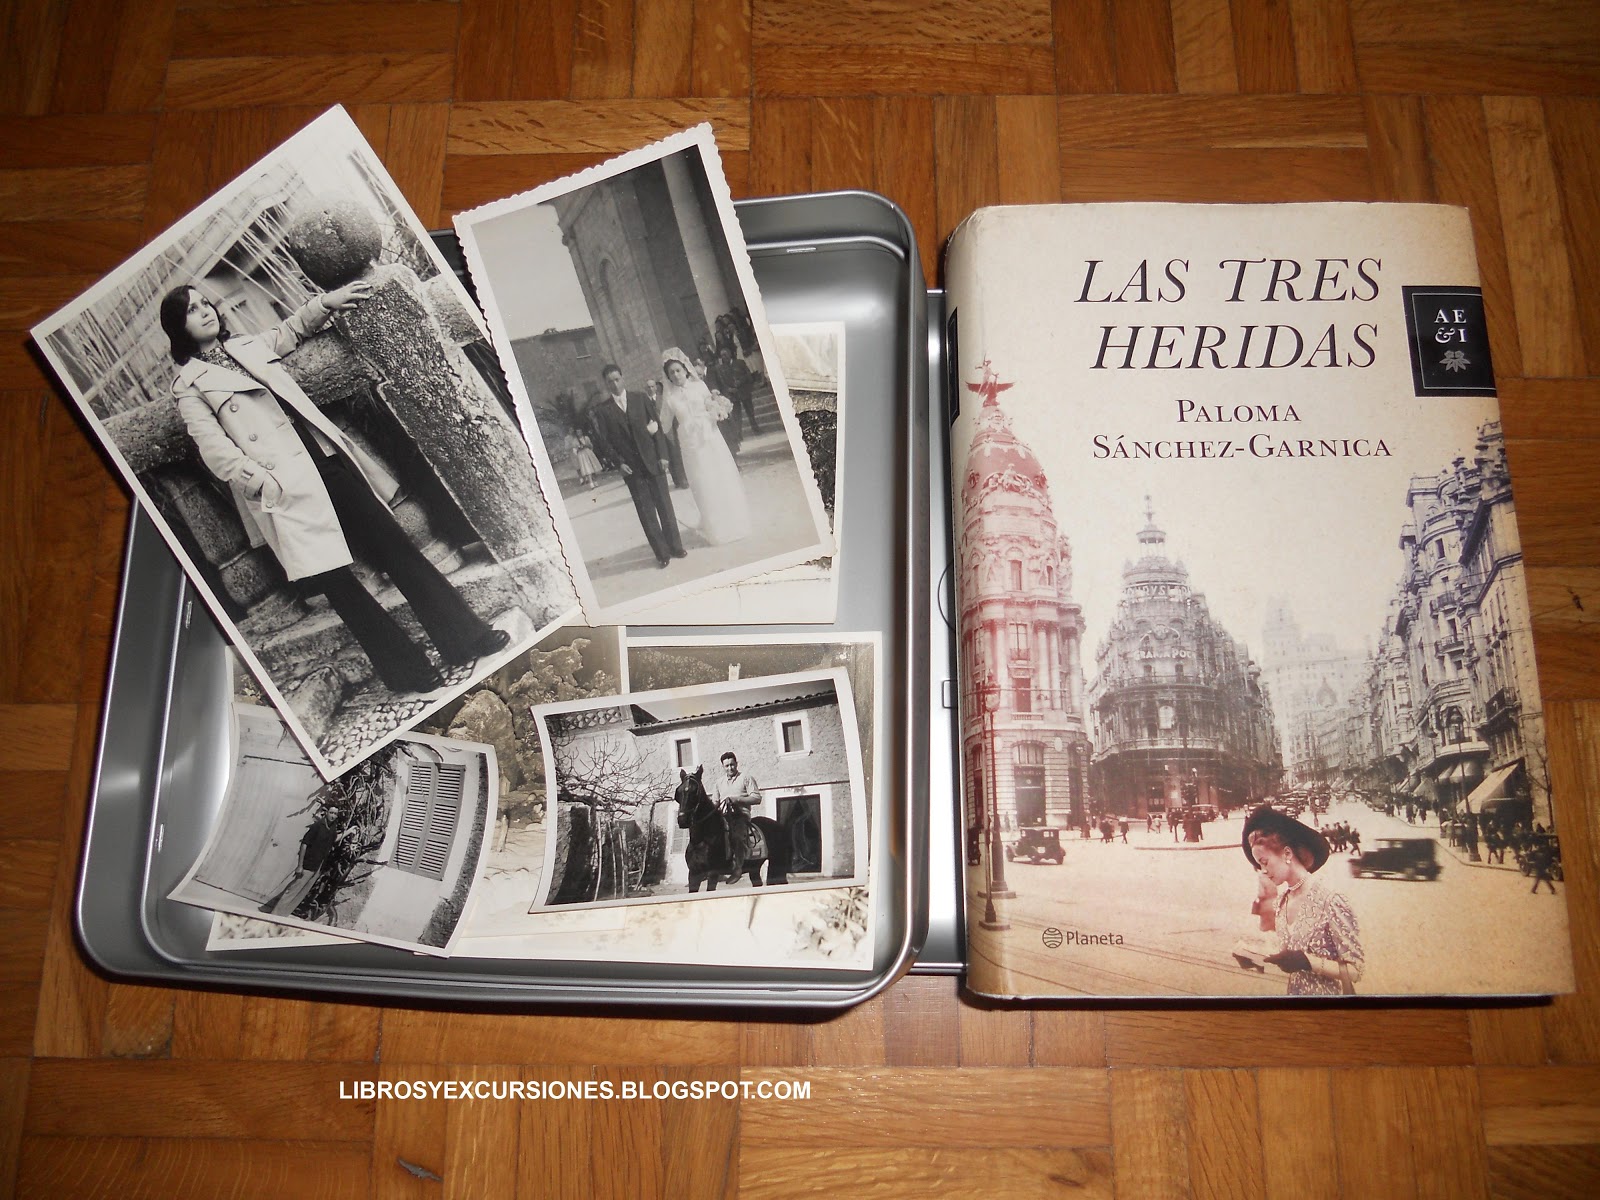 Libros y excursiones: Las tres heridas de Paloma Sánchez-Garnica